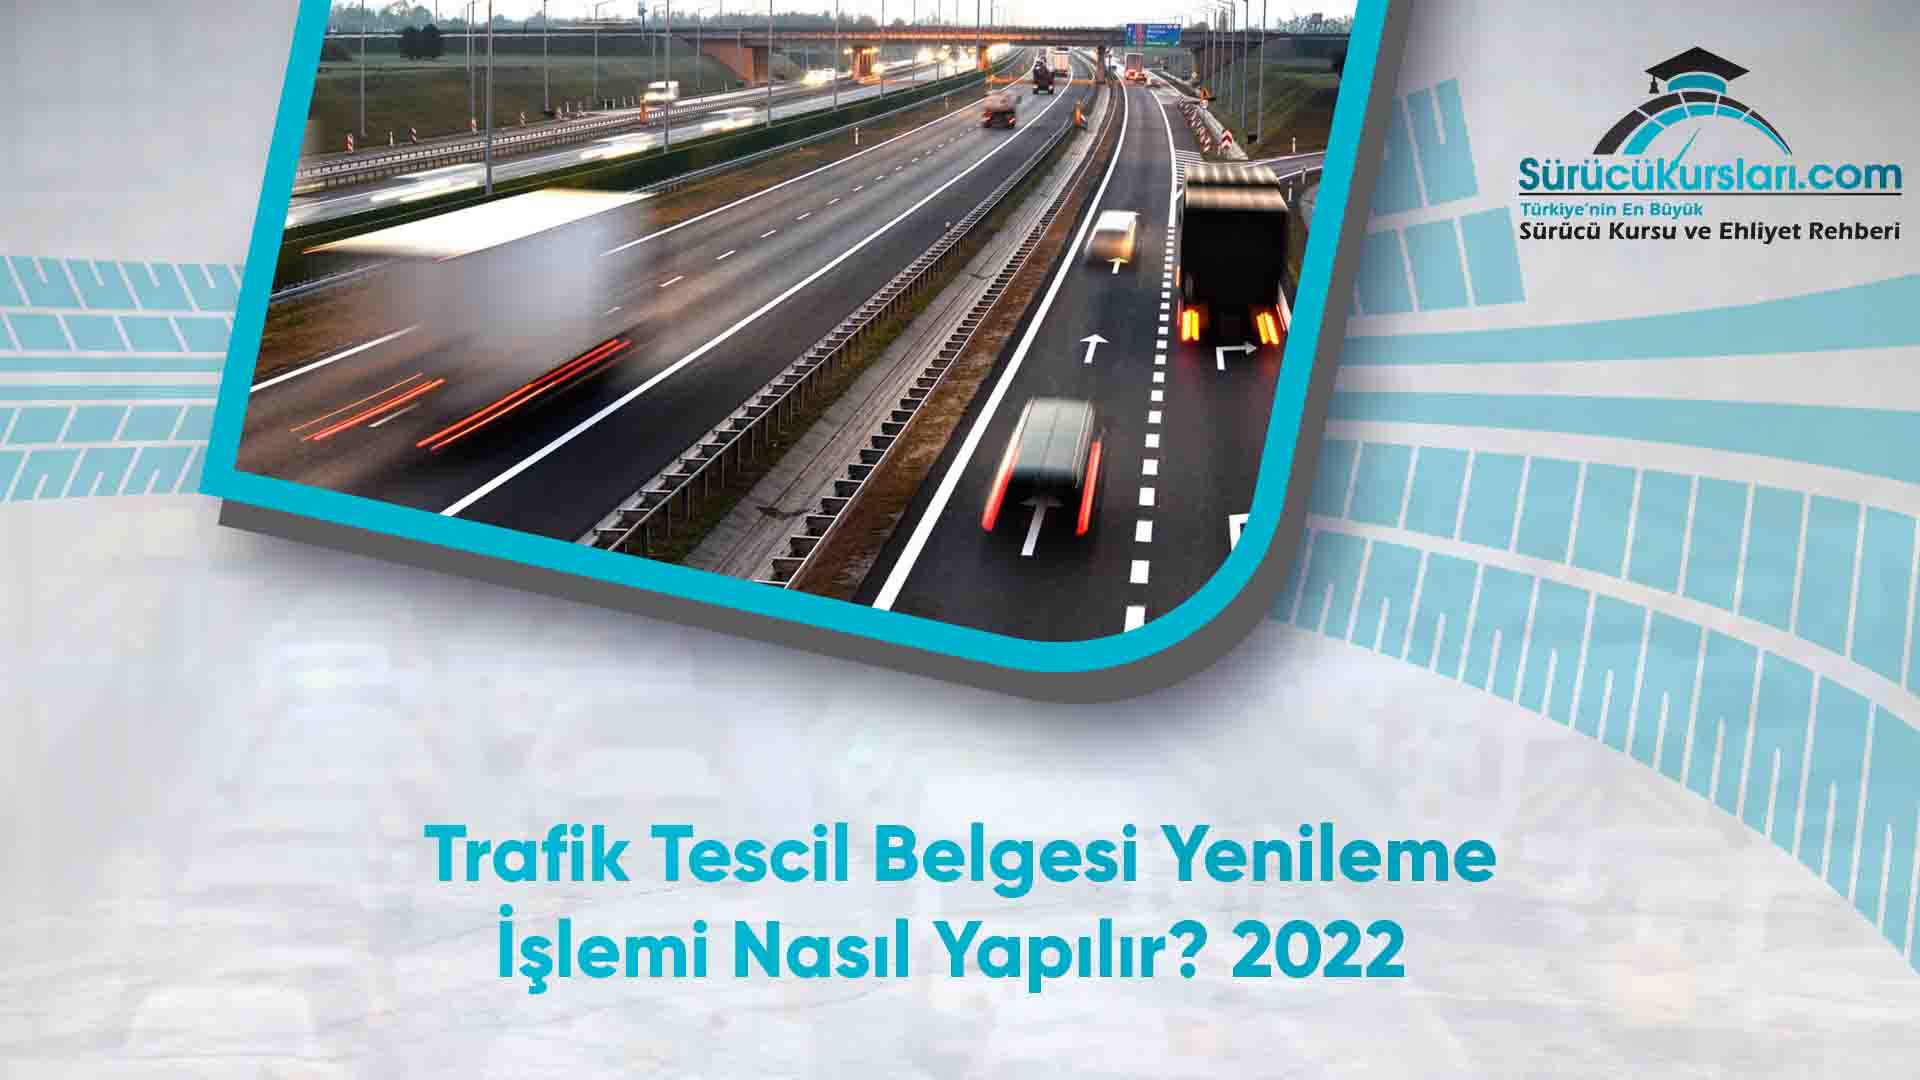 Trafik Tescil Belgesi Yenileme İşlemi Nasıl Yapılır - 2022